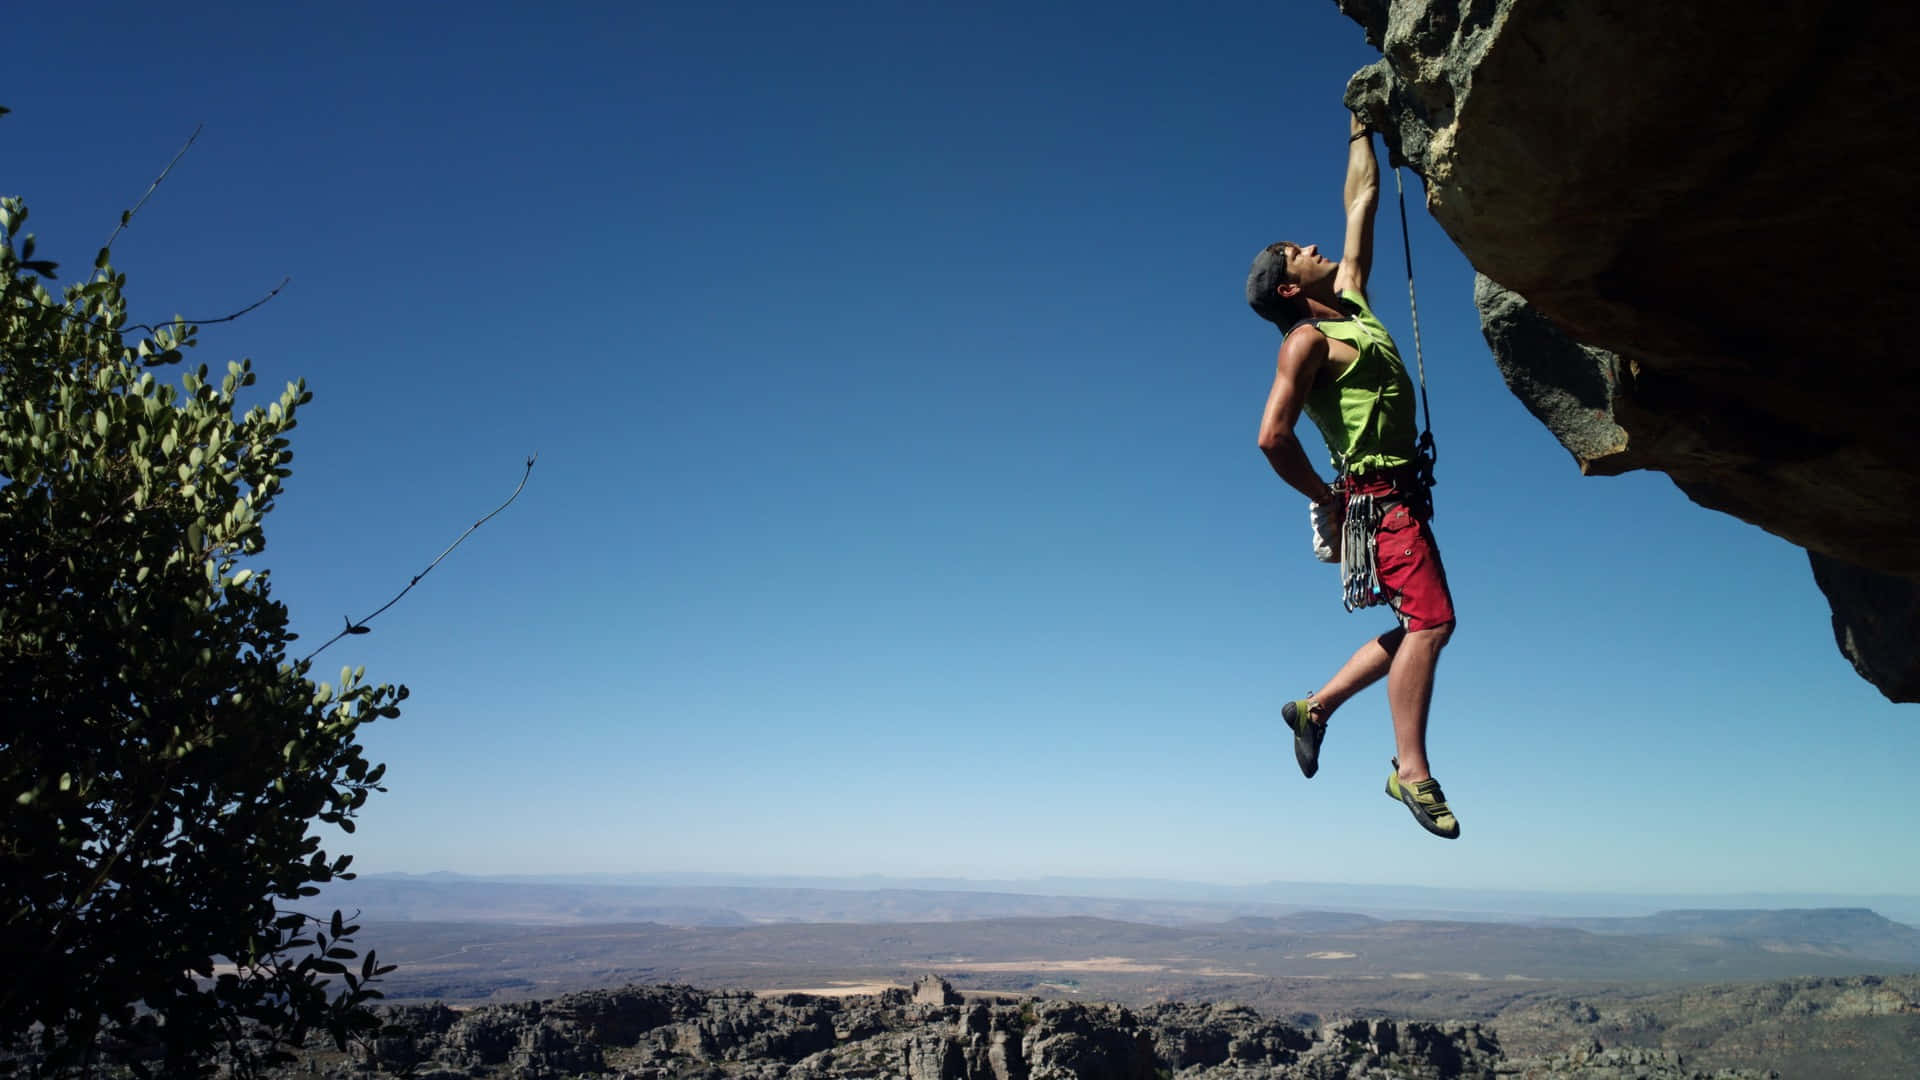 Raggiunginuove Vette - L'arrampicata È Un Ottimo Modo Per Spingere I Tuoi Limiti Ed Esplorare Nuove Sfide.